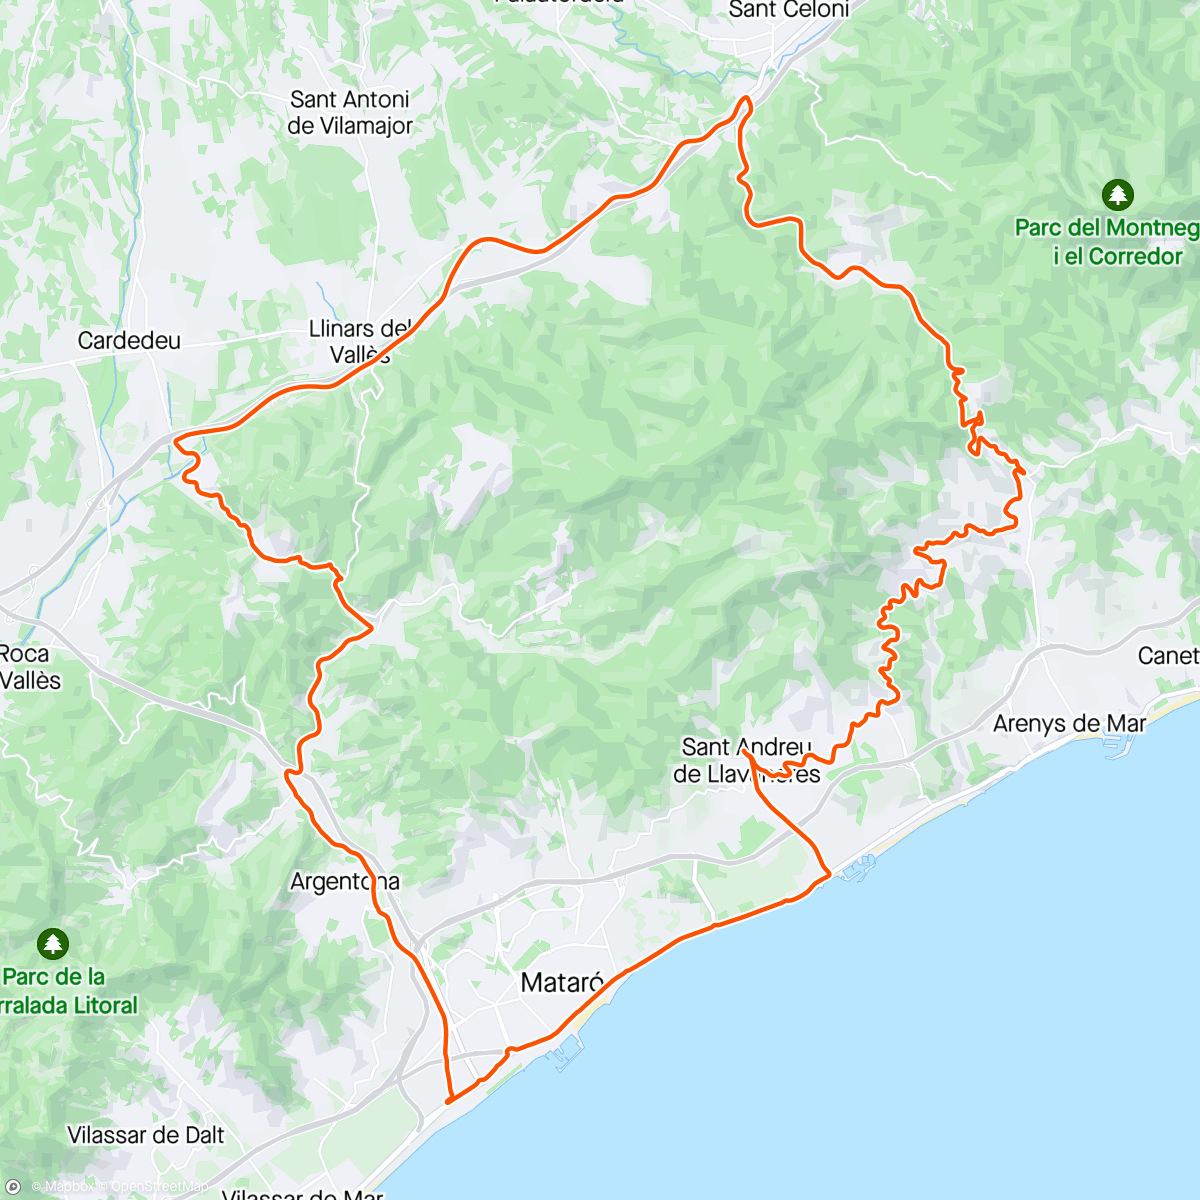 「Campeonato Catalunya M40 St. Andrés Llavaneres」活動的地圖